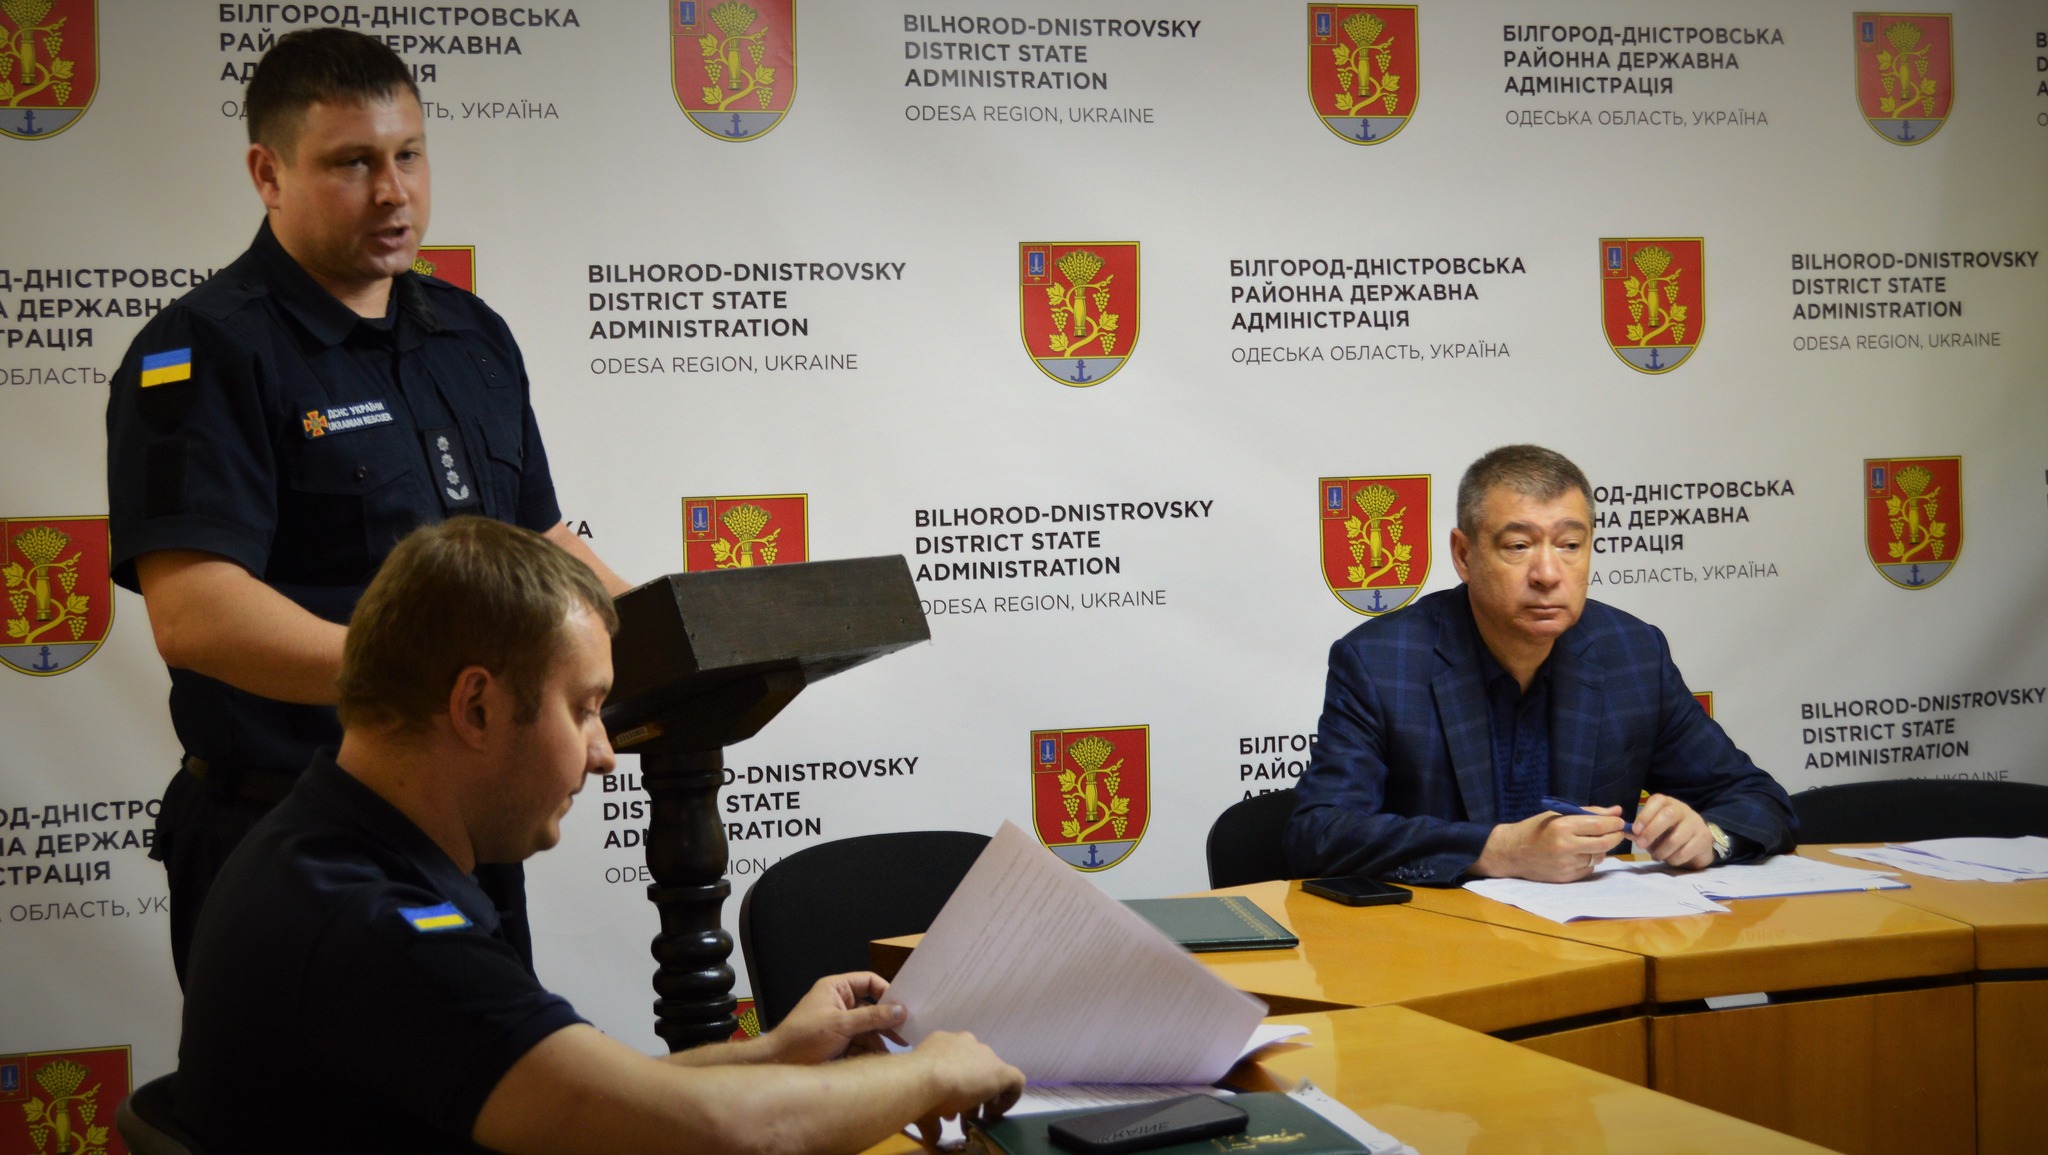 Протипожежний стан висоток Білгород-Дністровського району викликає занепокоєння служби з надзвичайних ситуацій